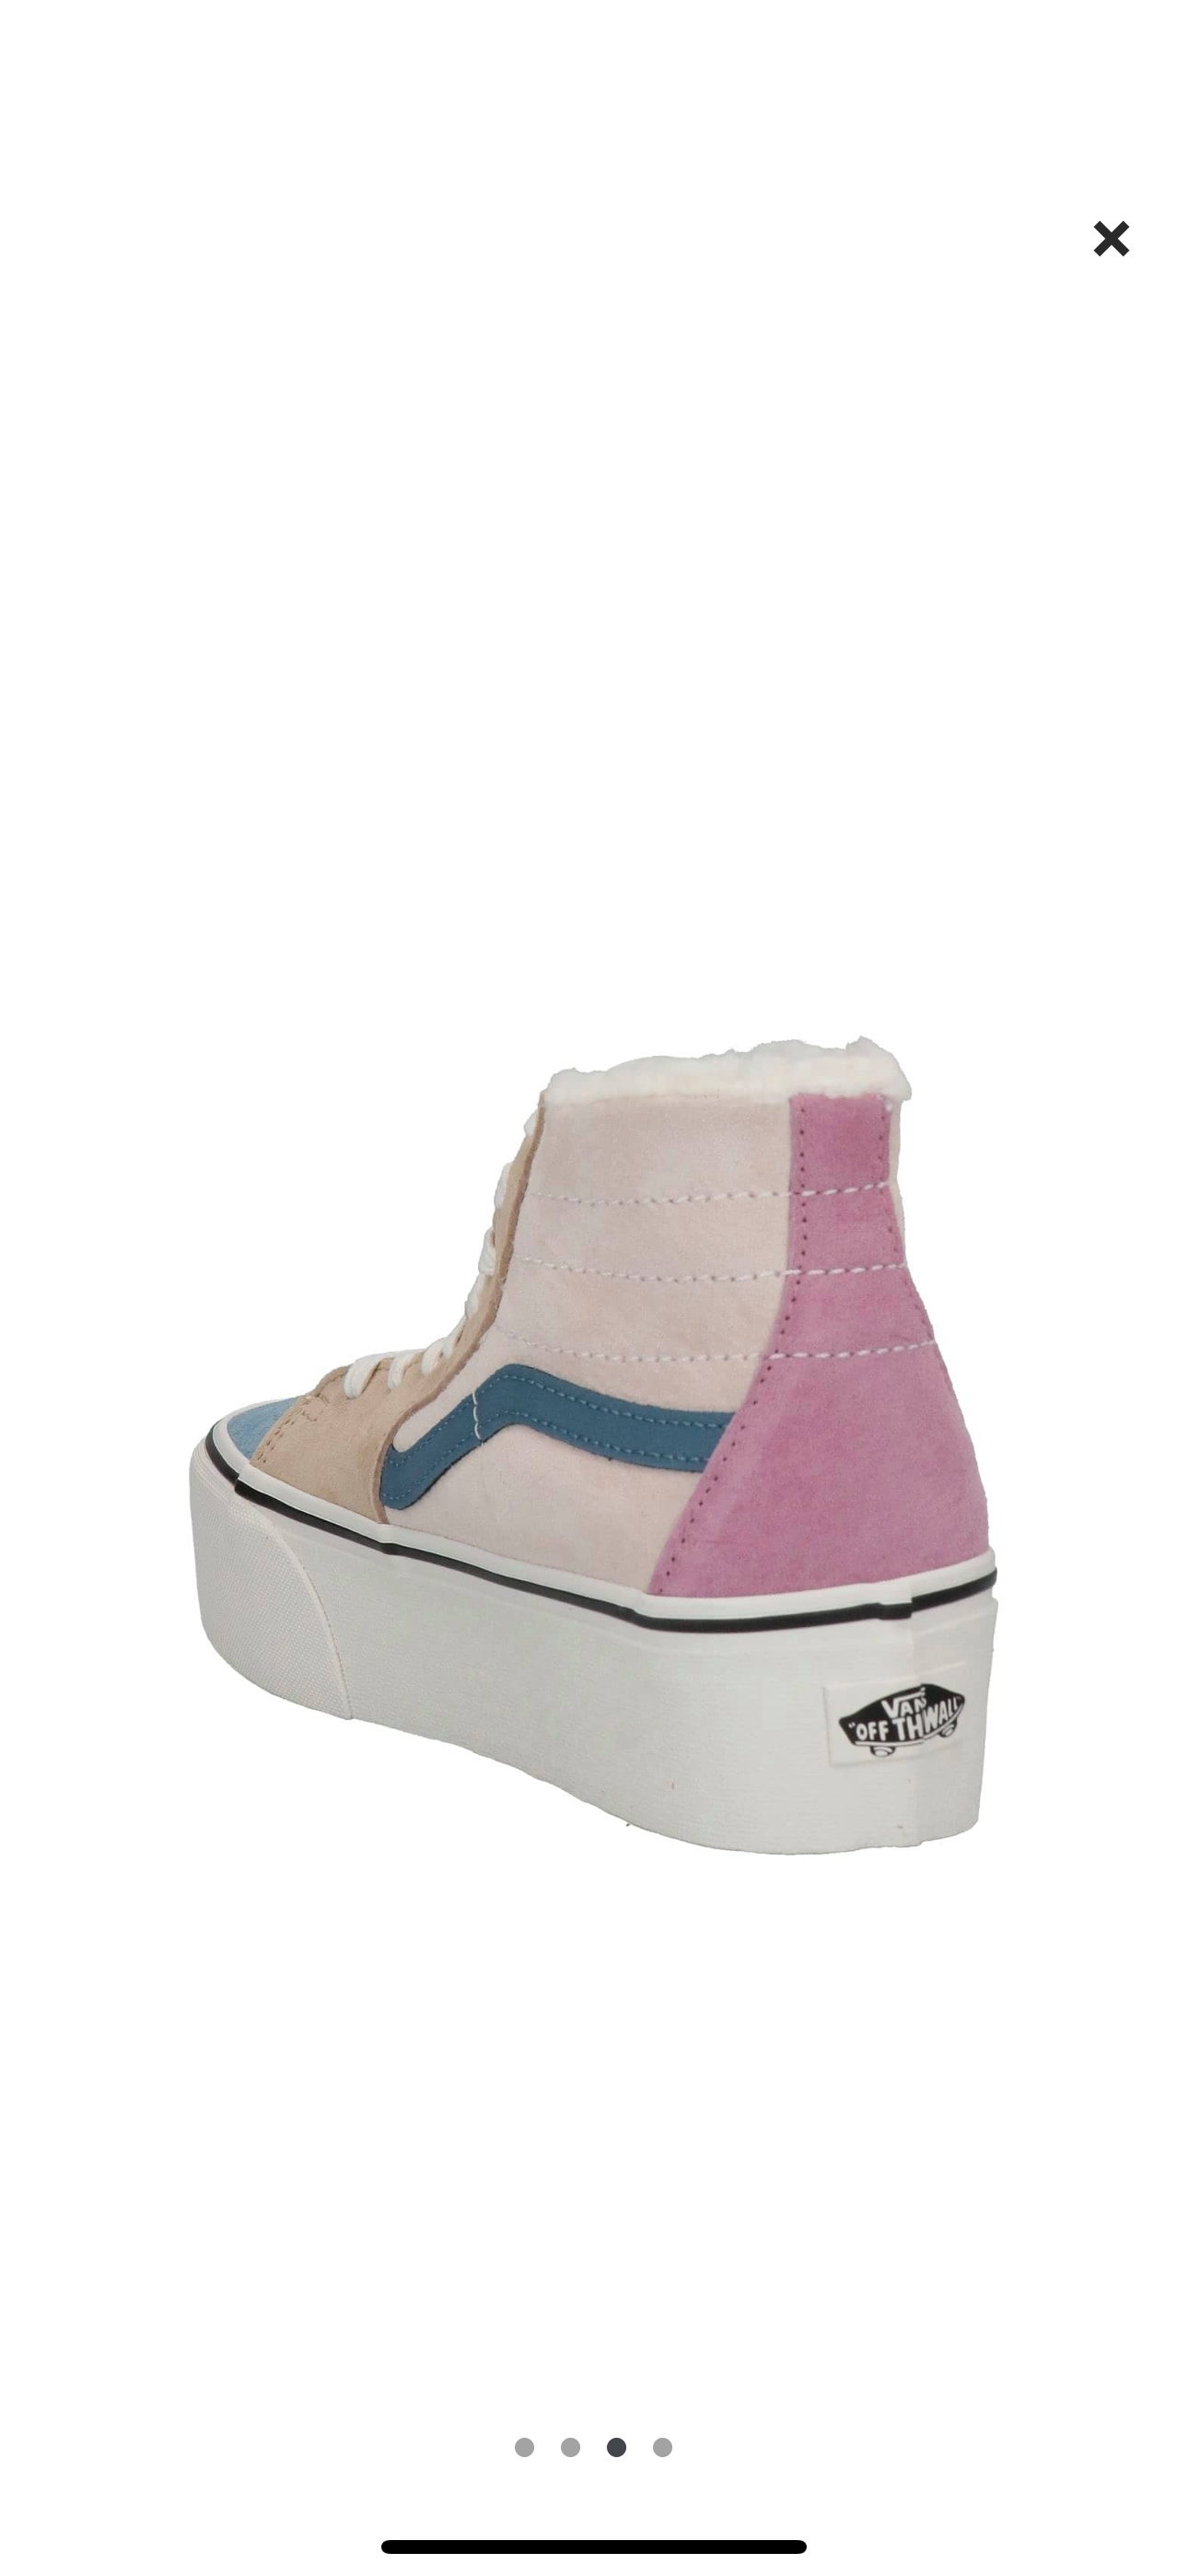 Vans Sk8 Hi Pig Suede Multi Sherpa platform sneakers pink blue tan unisex